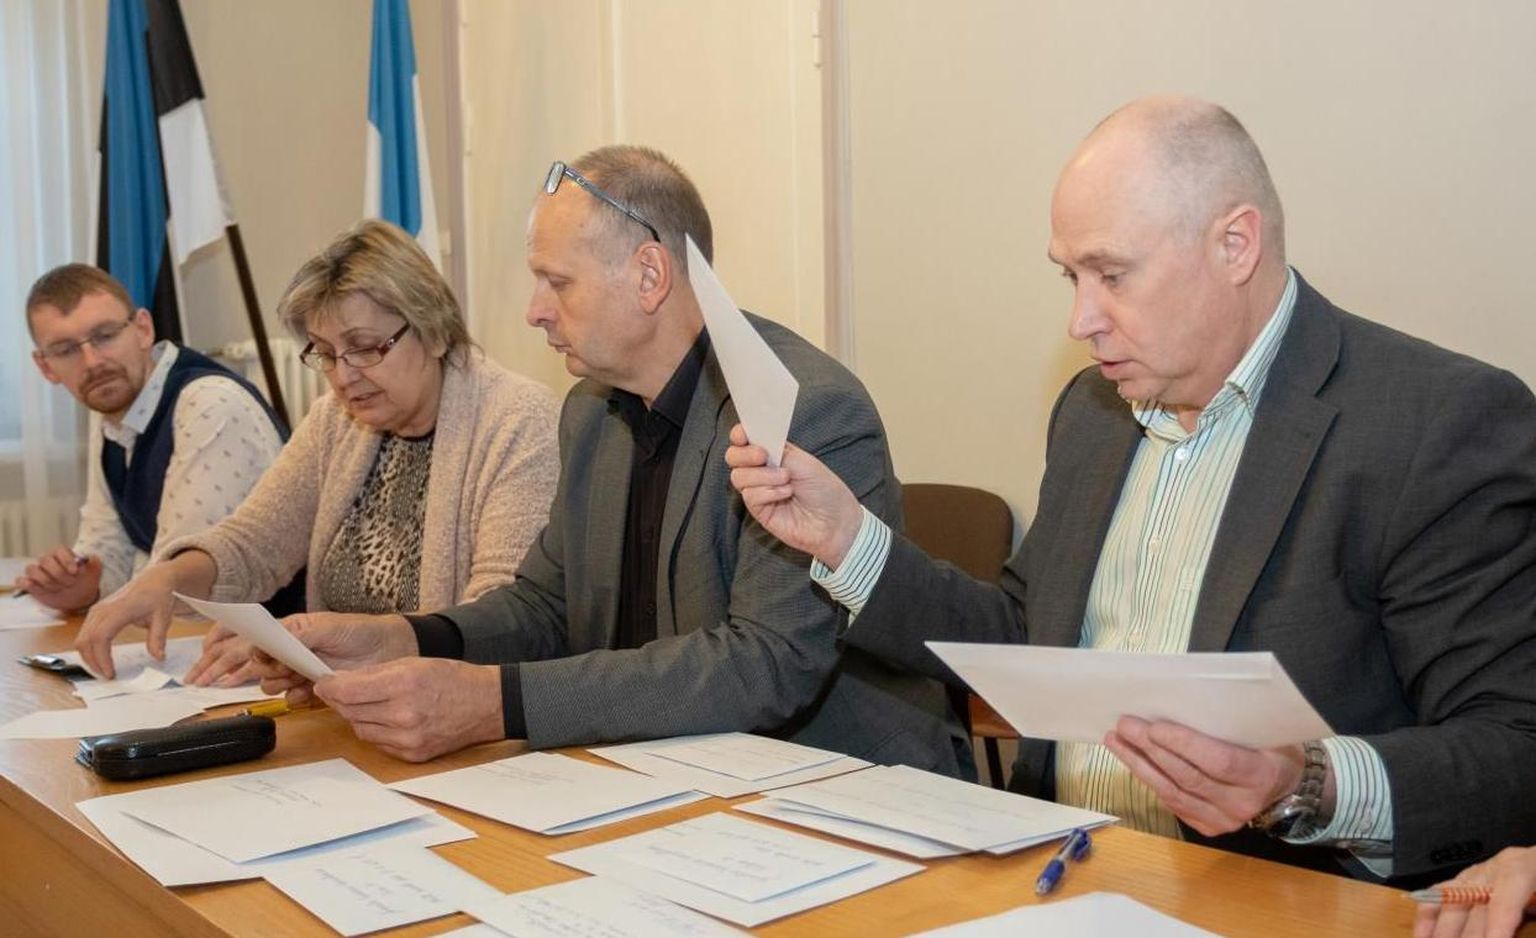 Ühingu Korruptsioonivaba Eesti hinnangul pole Riho Tipu (paremal) valimine Pärnu spordikeskuse juhi kohale olnud läbipaistev ega avalikkusele põhjendatud.  